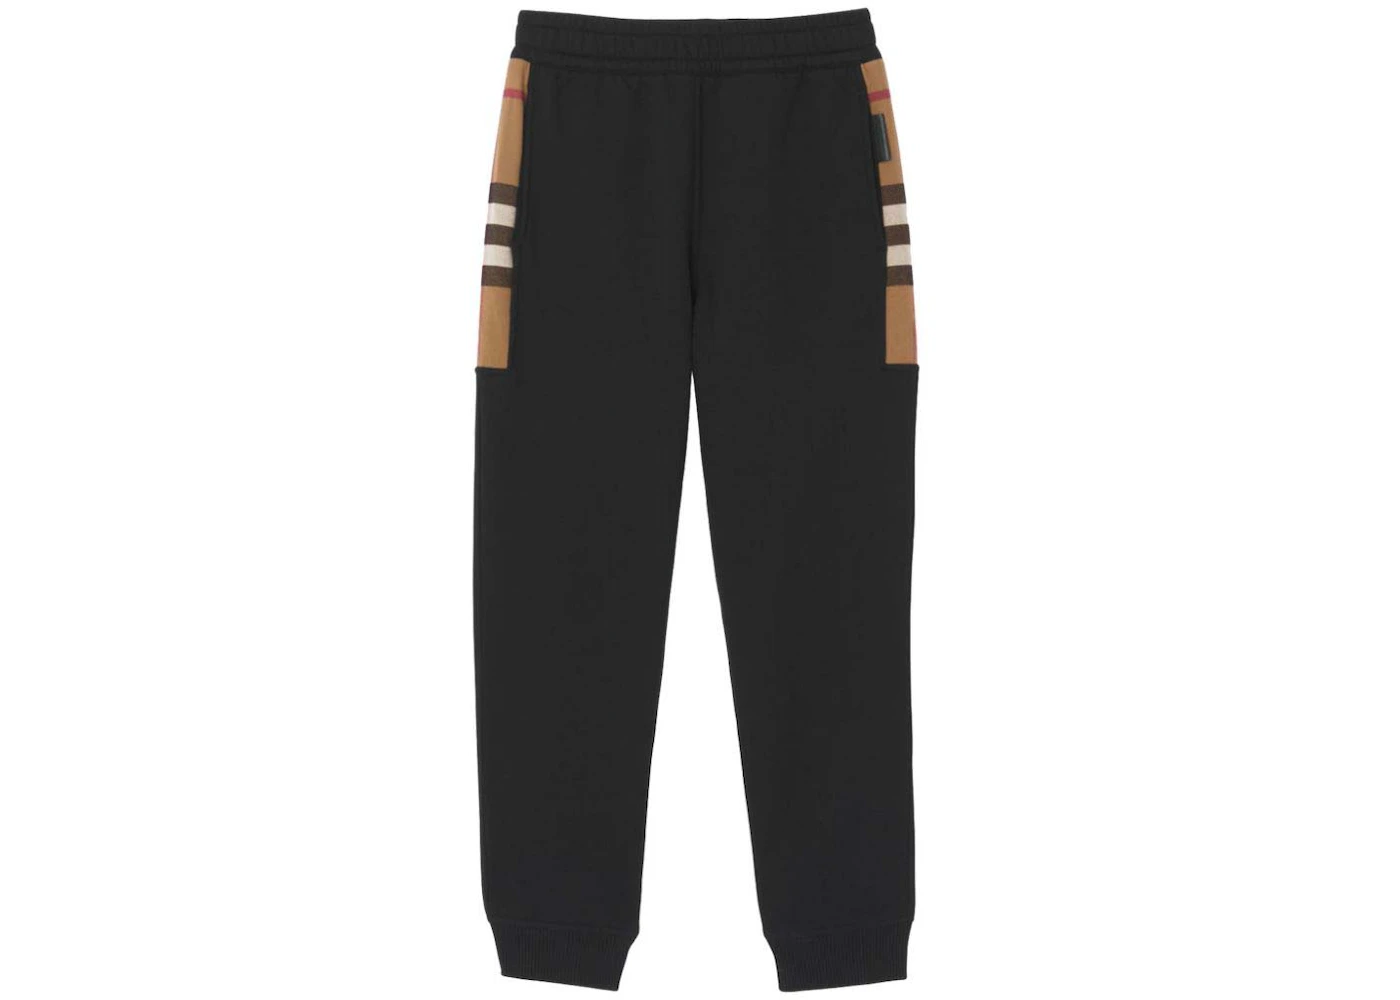 Burberry Milo Cotton-Blend Check Panel Sweatpants Black Men's - GB